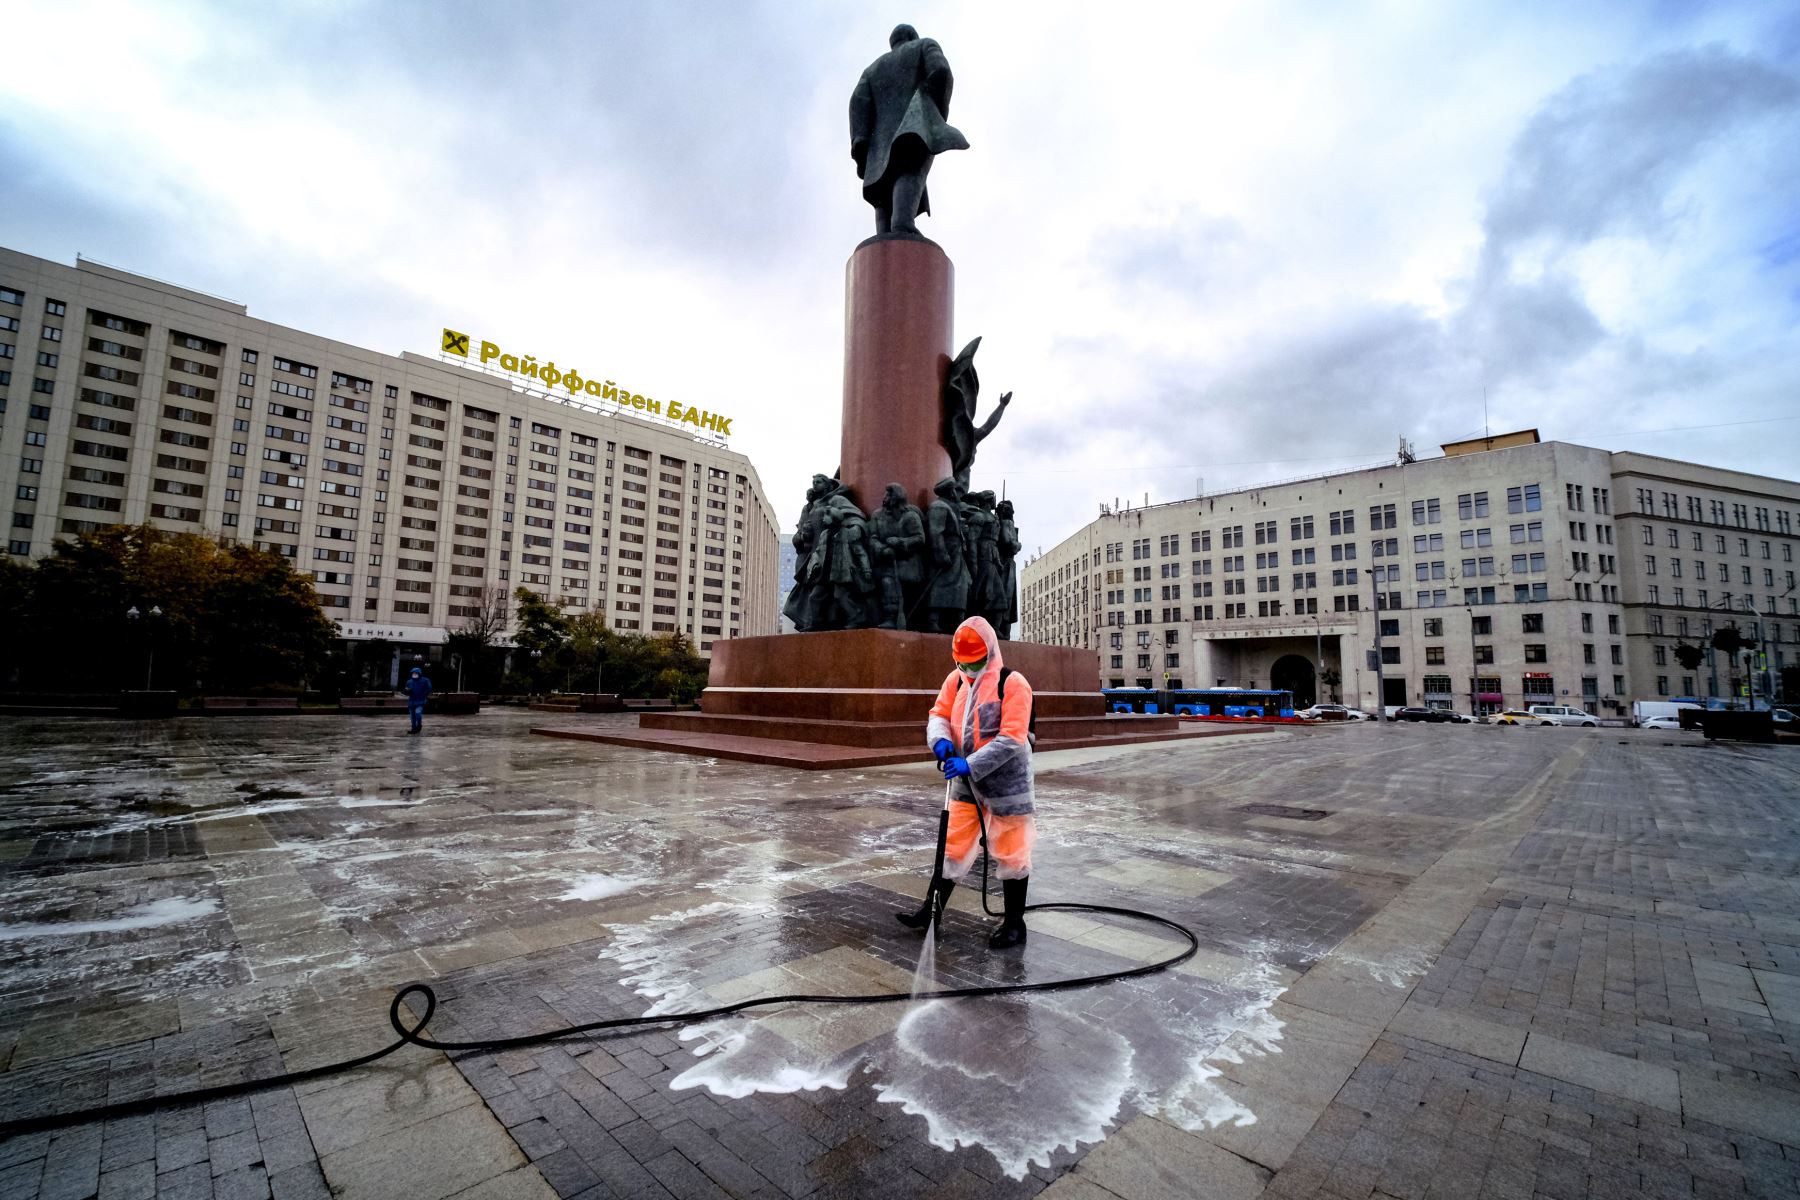 Un trabajador municipal que usa una mascarilla y un traje protector para protegerse contra la enfermedad del coronavirus desinfecta una plaza cerca del monumento a Lenin, en el centro de Moscú. Foto: AFP